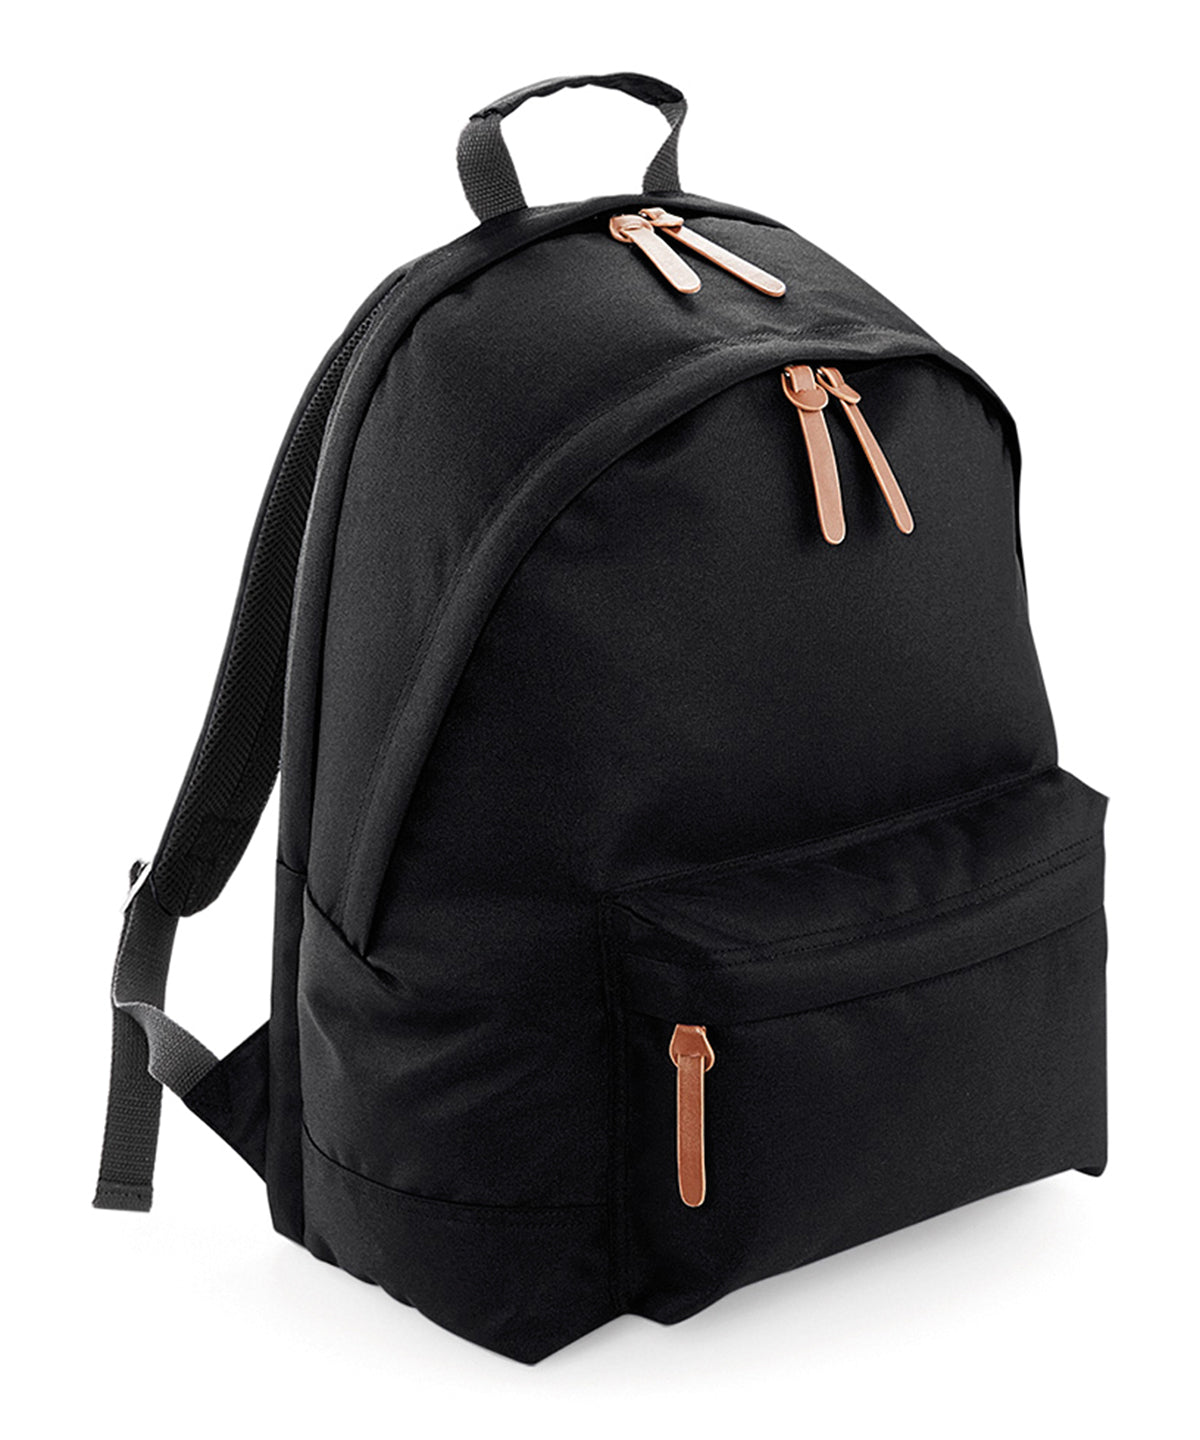 Personalised Bags - Black Bagbase Campus laptop backpack